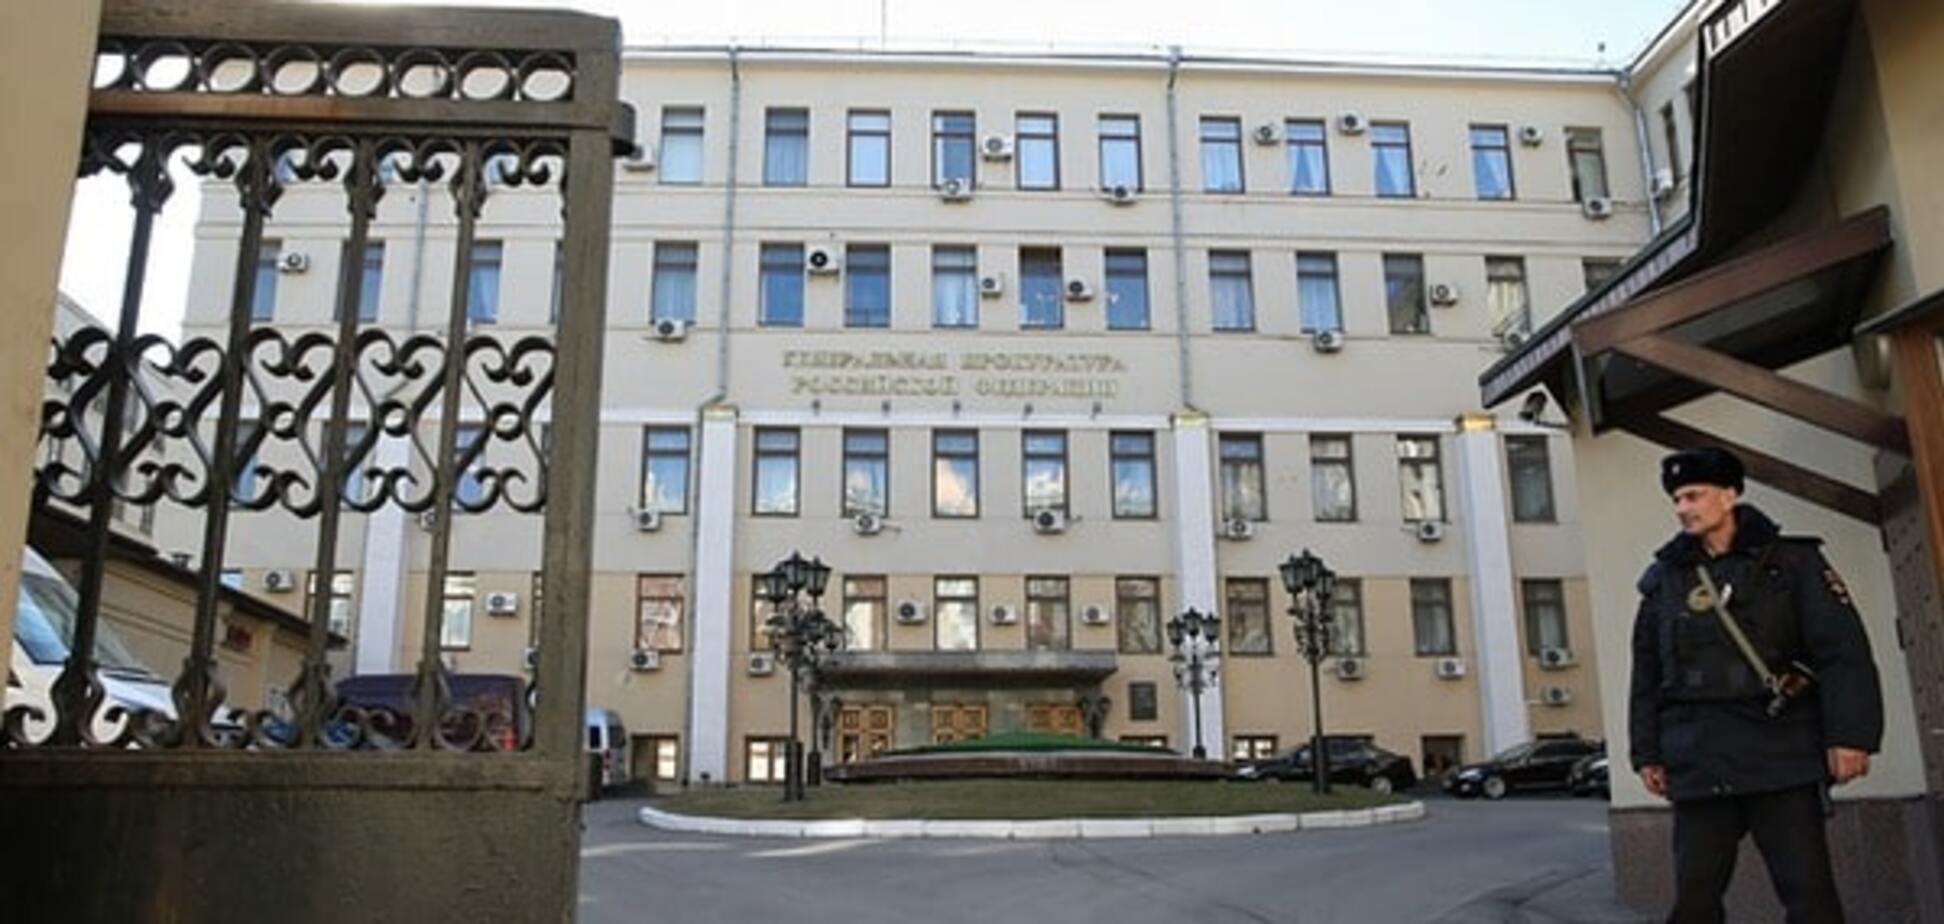 Будівлю Генпрокуратури в Москві закидали яйцями - ЗМІ